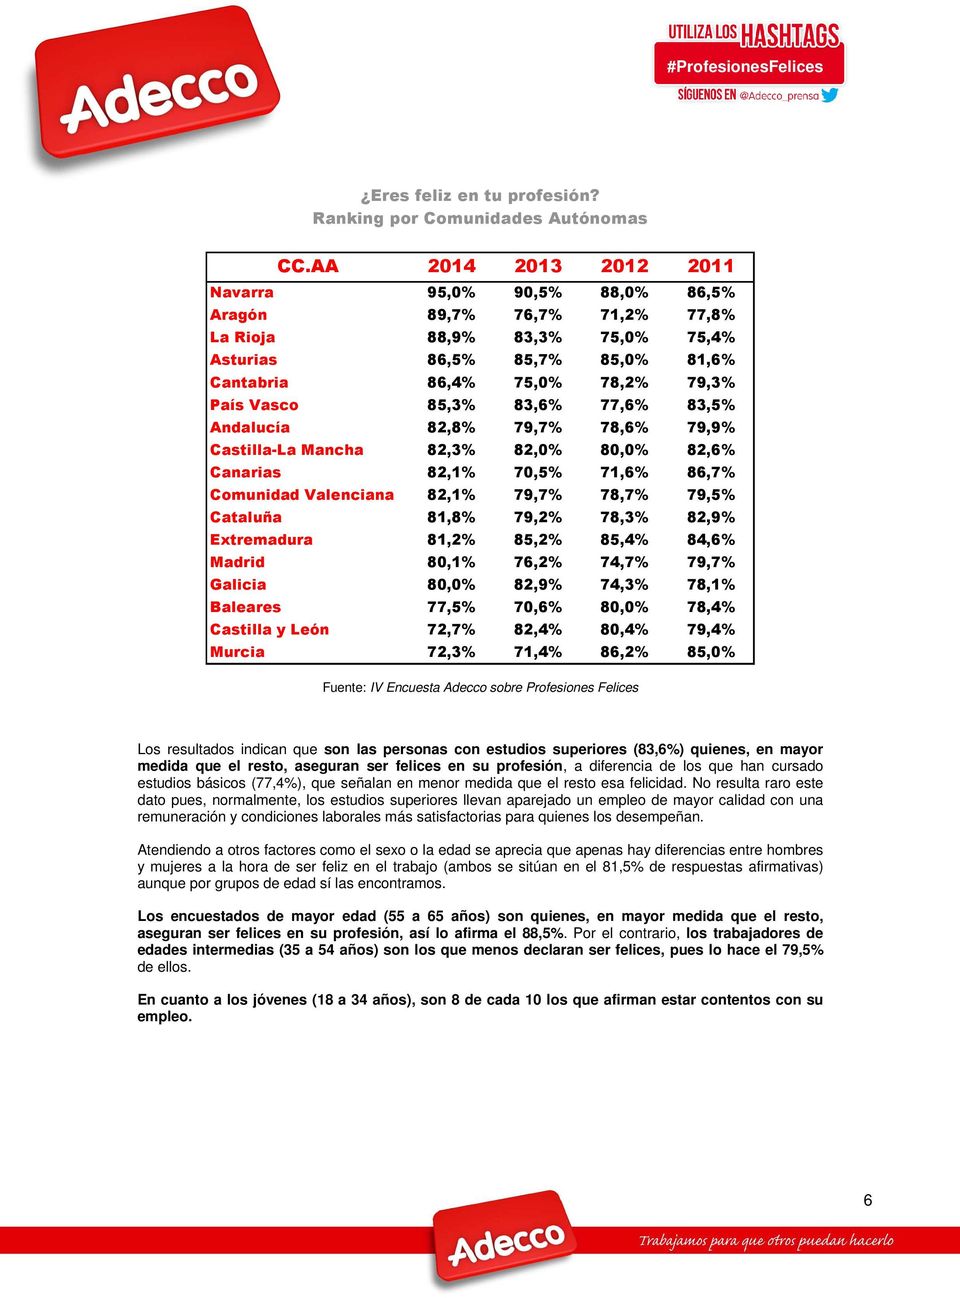 85,3% 83,6% 77,6% 83,5% Andalucía 82,8% 79,7% 78,6% 79,9% Castilla-La Mancha 82,3% 82,0% 80,0% 82,6% Canarias 82,1% 70,5% 71,6% 86,7% Comunidad Valenciana 82,1% 79,7% 78,7% 79,5% Cataluña 81,8% 79,2%